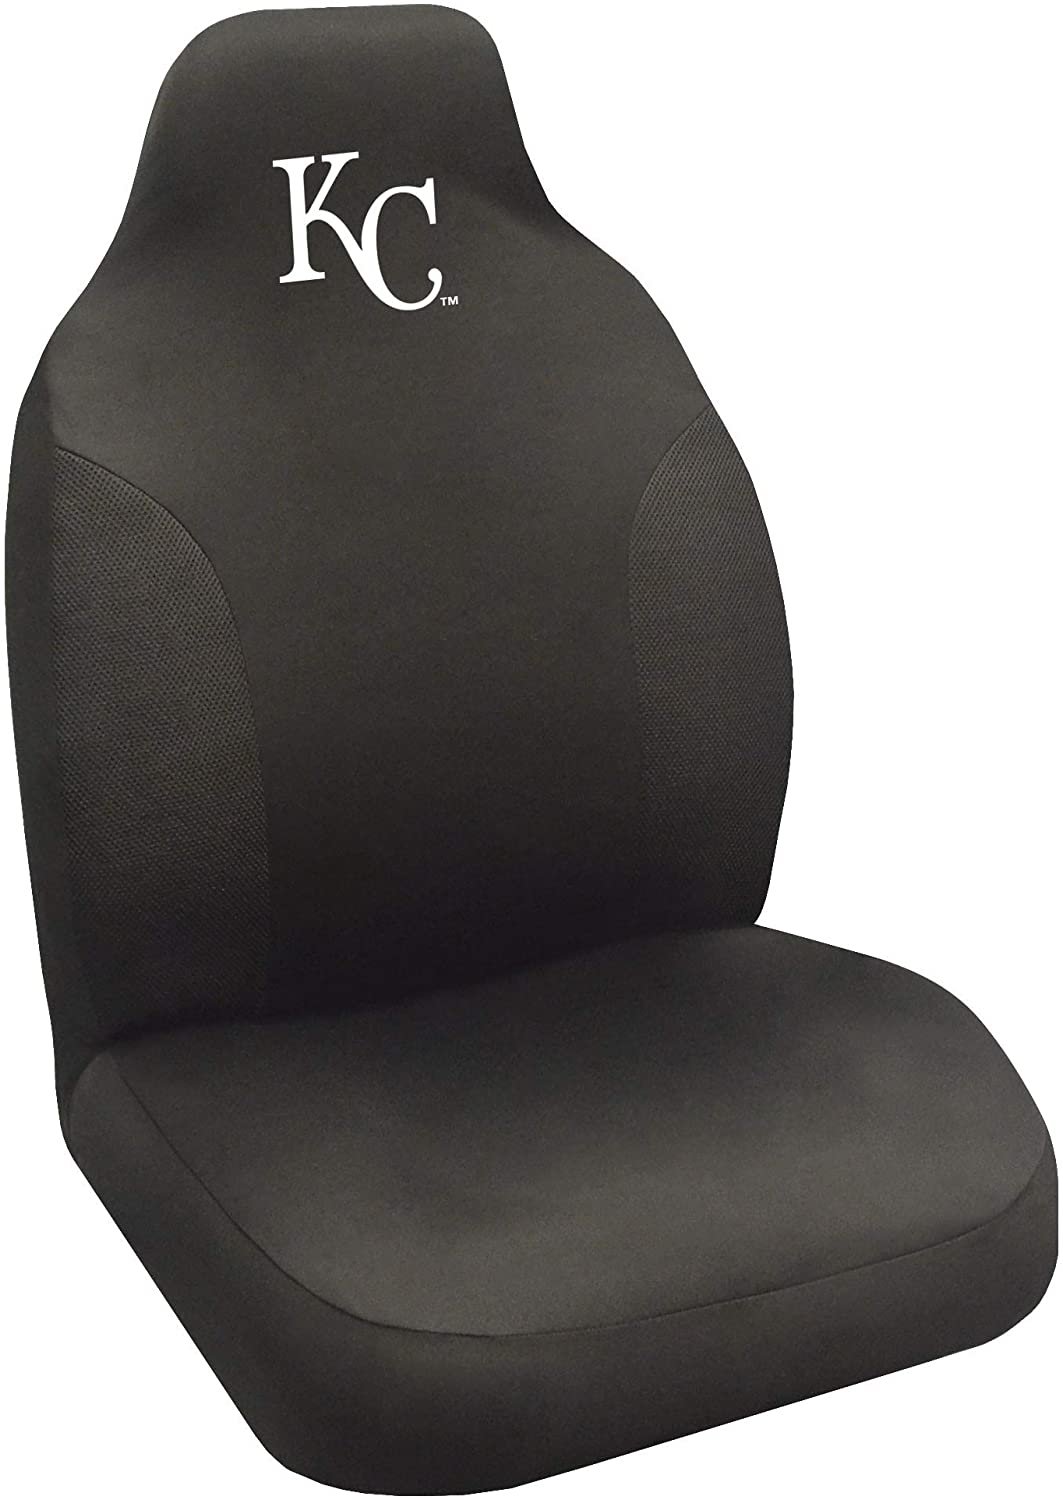 FANMATS 27061 MLB - Kansas City Royals Seat Cover